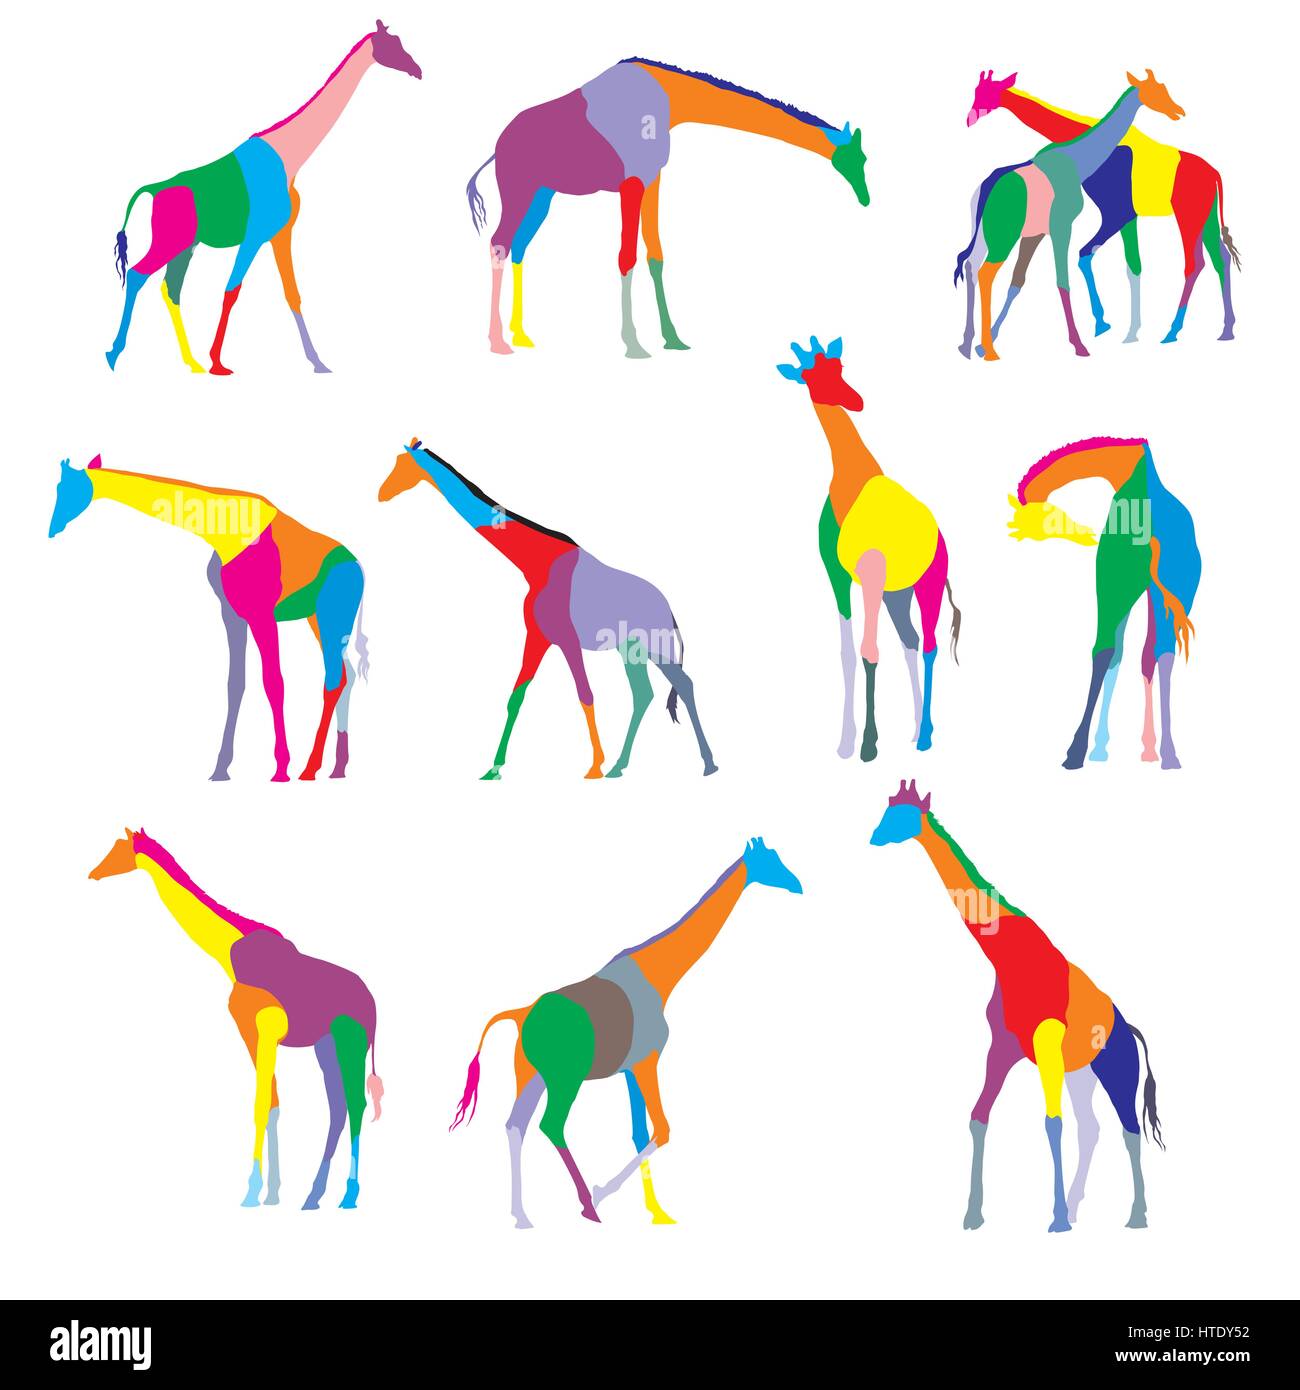 Satz von bunt gefärbten Silhouetten von Giraffen isoliert auf weißem Background Stock Vektor